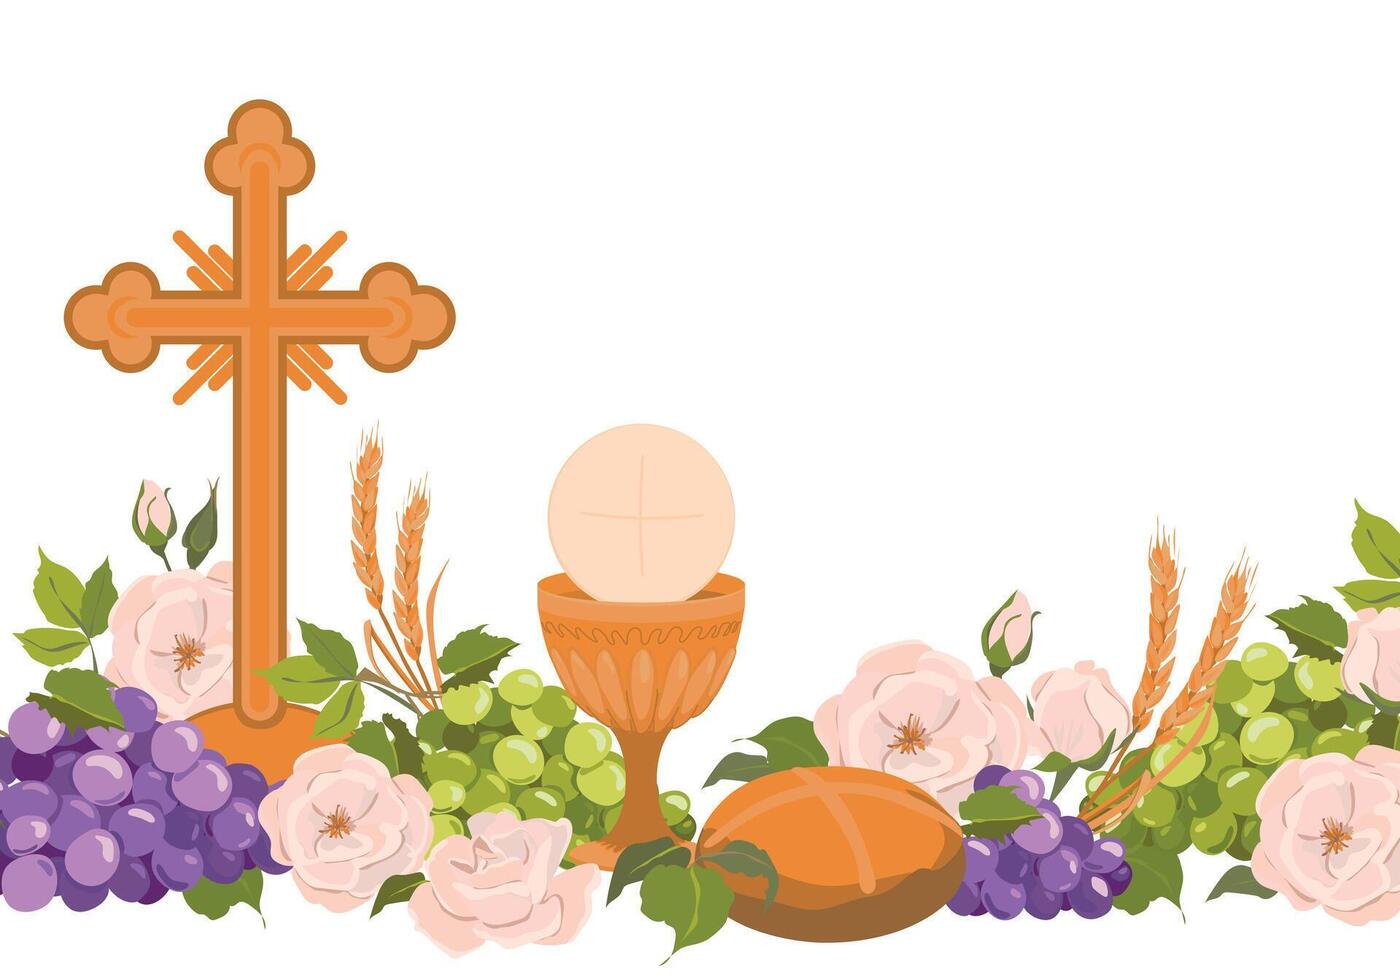 Katholiek eerste gemeenschap. . samenstelling van christen symbolen. gouden kop voor wijn, kruisbeeld, brood, wijn, druiven, wit rozen. mooi ontwerp elementen voor een uitnodiging naar de heilig Eucharistie. vector